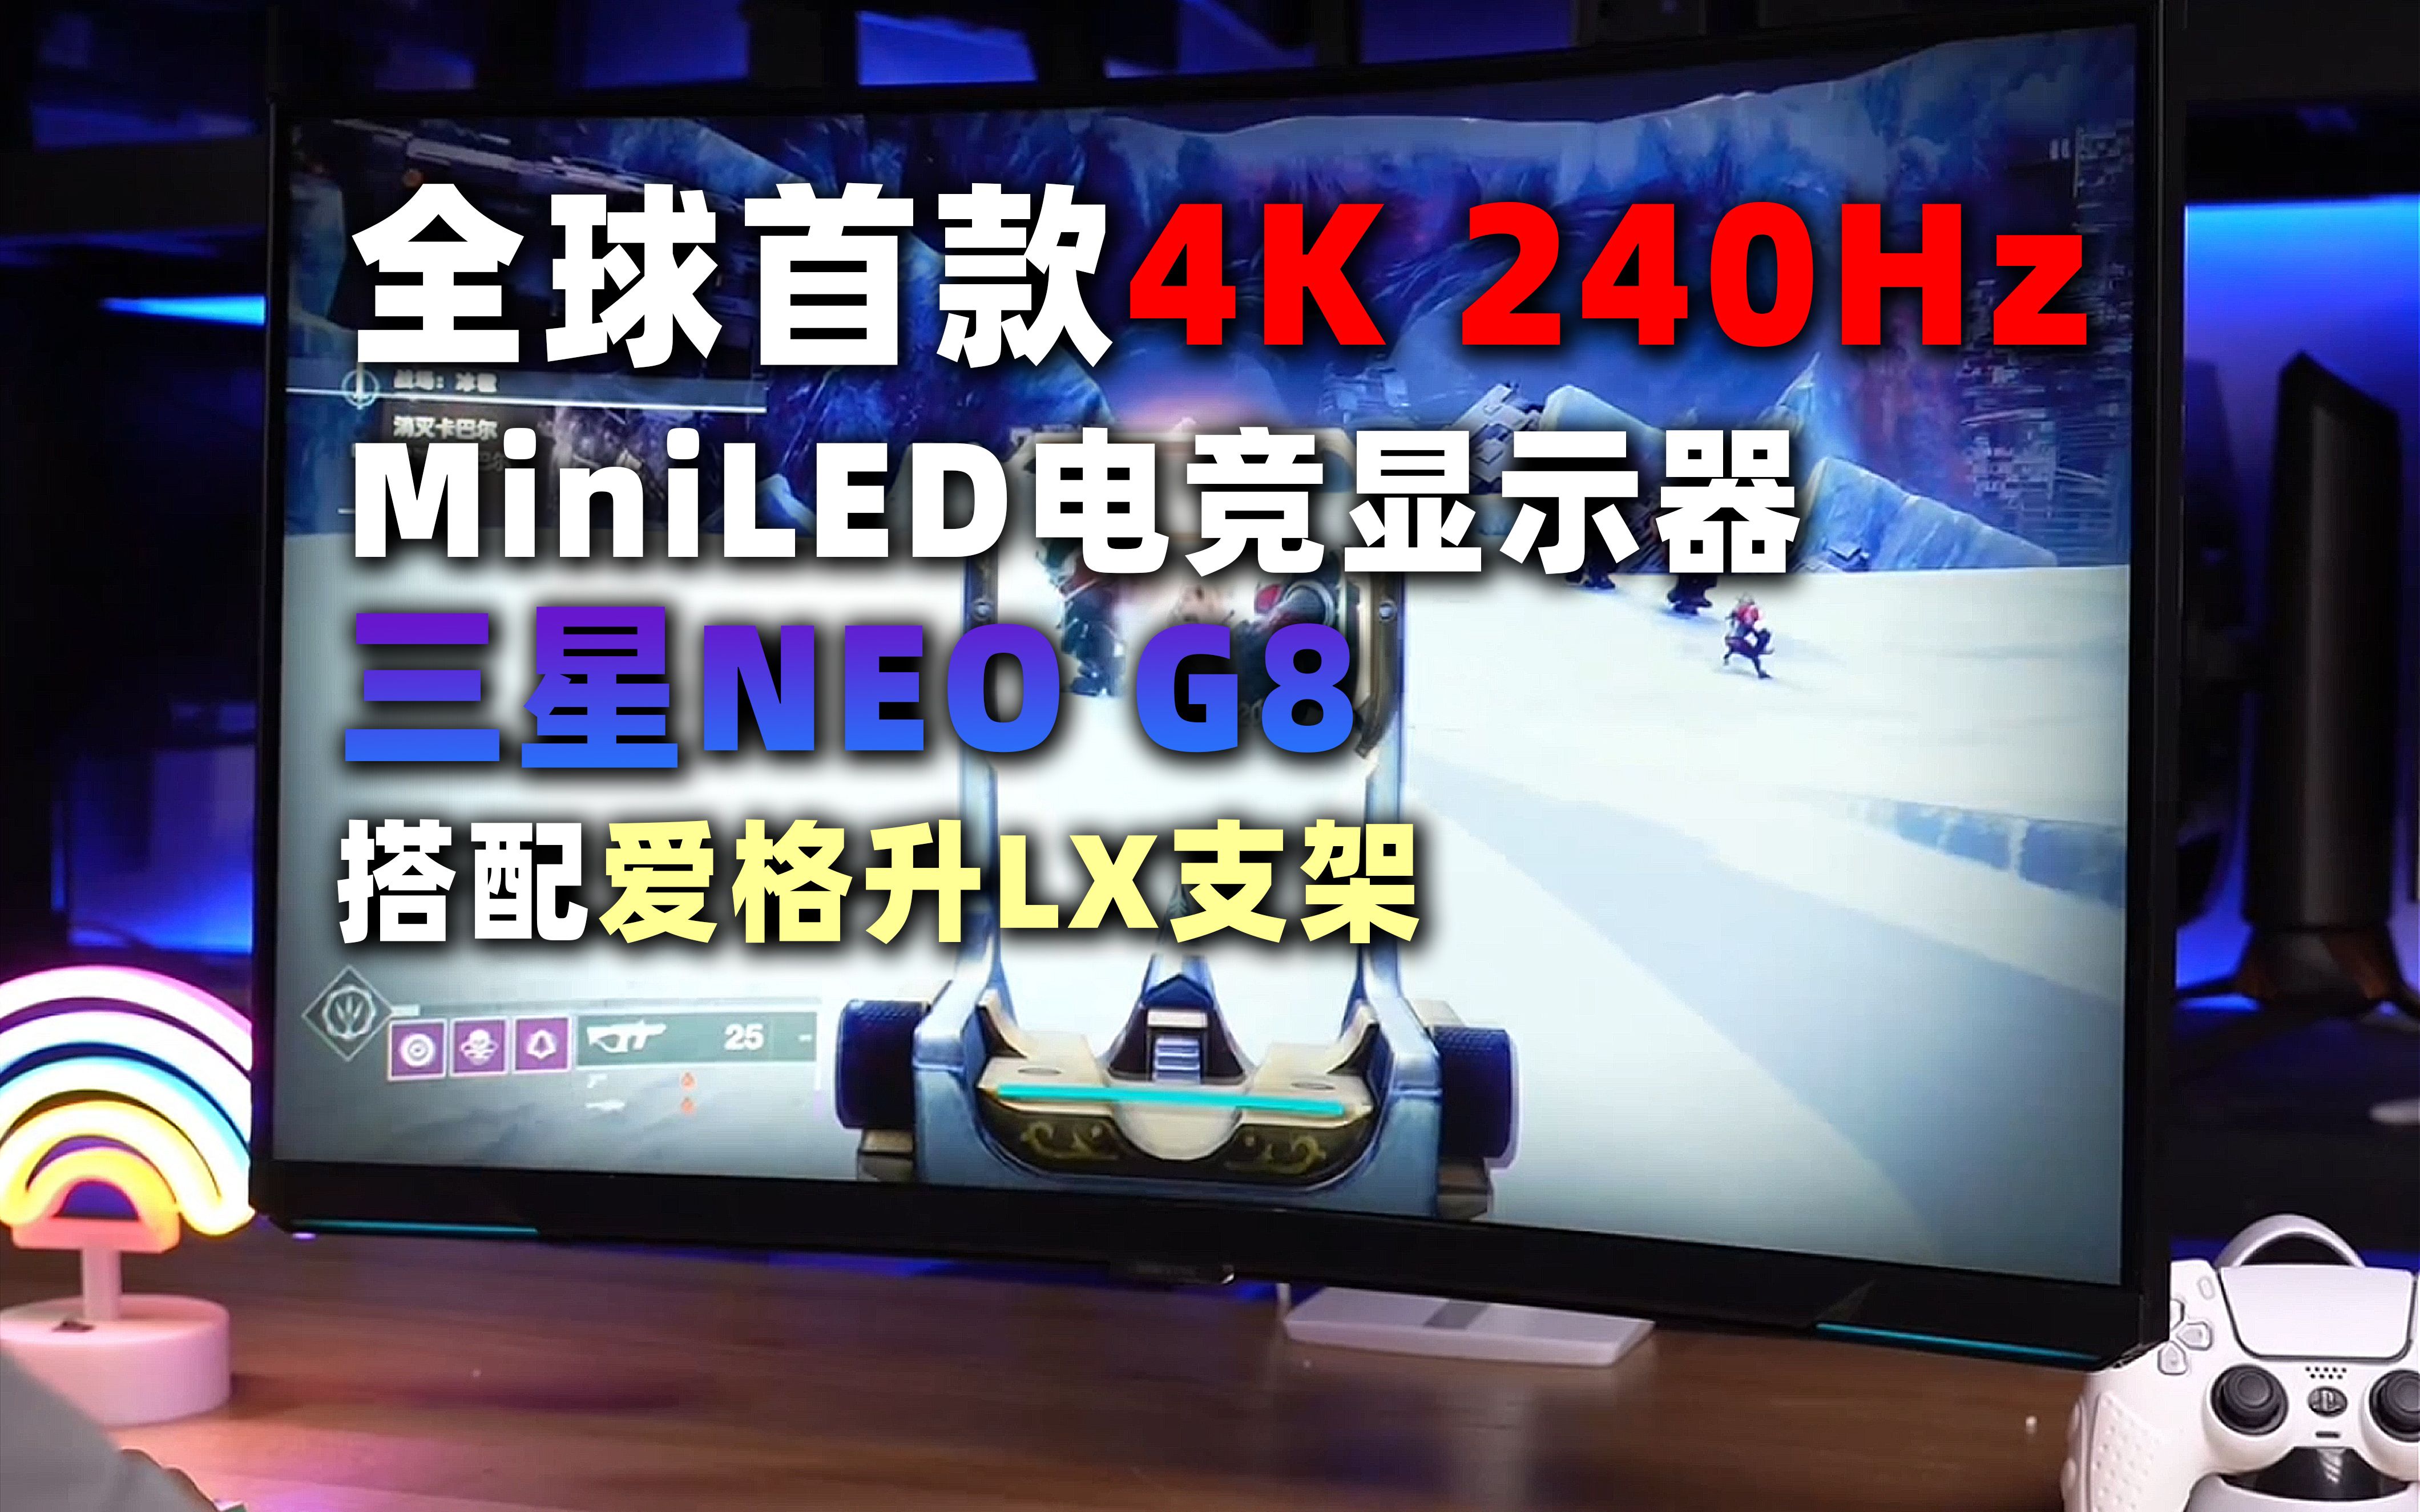 全球首款4K240Hz显示器三星NEO G8搭配爱格升LX支架展示-小雪人妹妹 